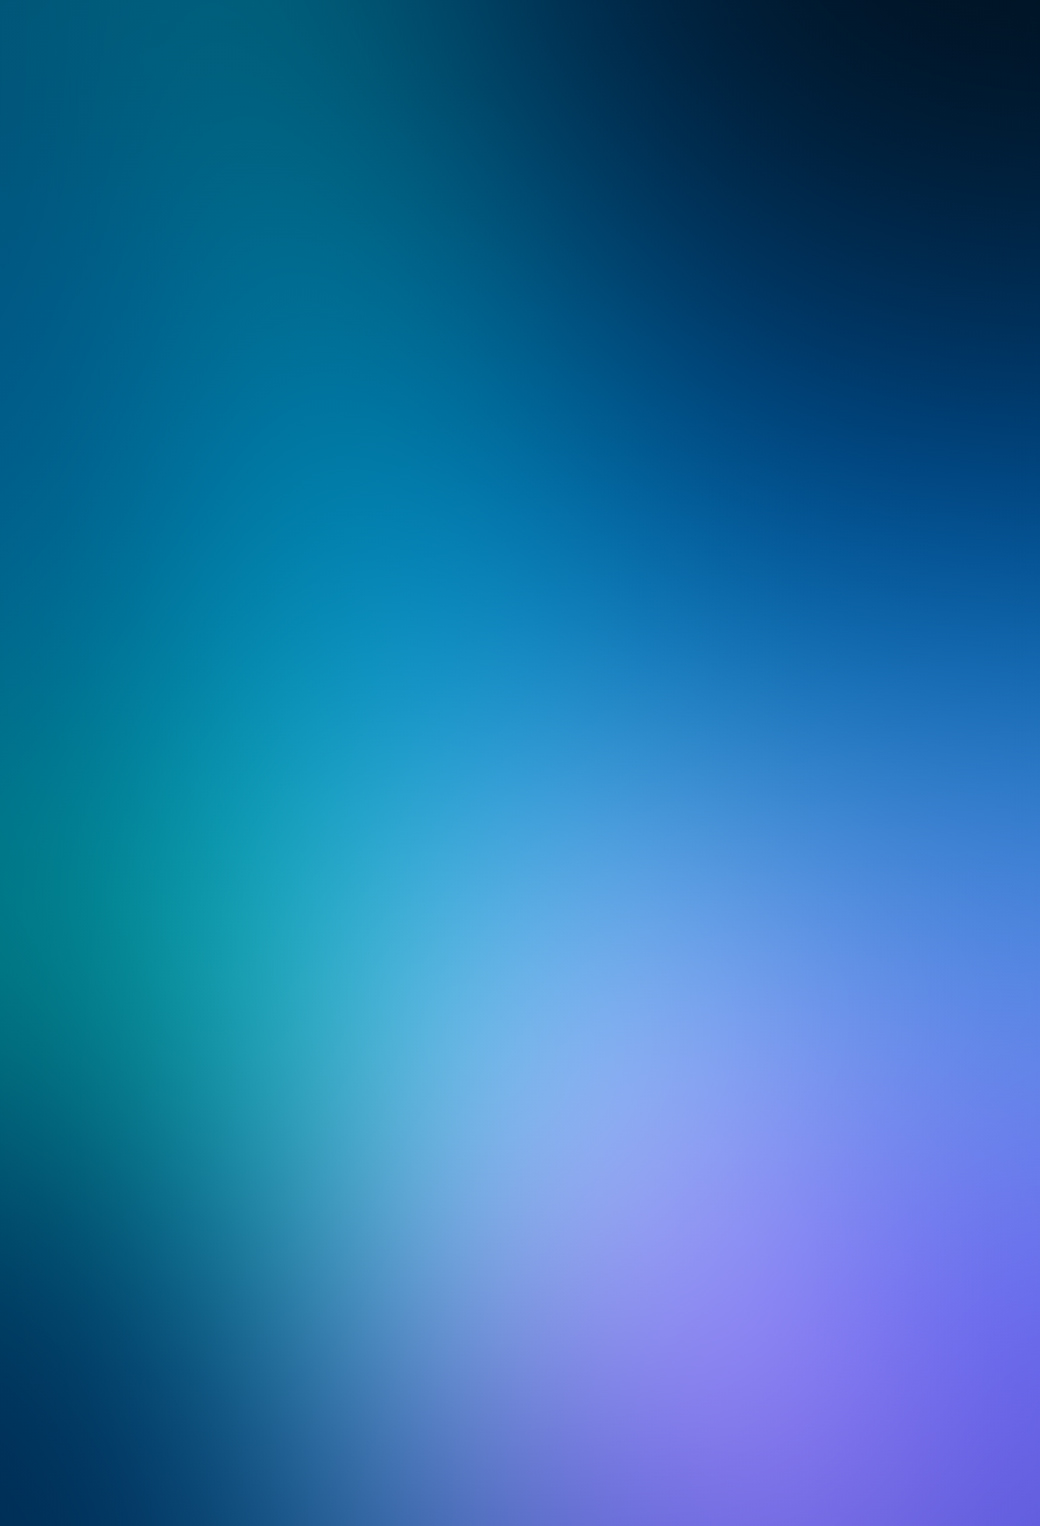 fond d'écran iphone parallax,bleu,ciel,jour,aqua,turquoise